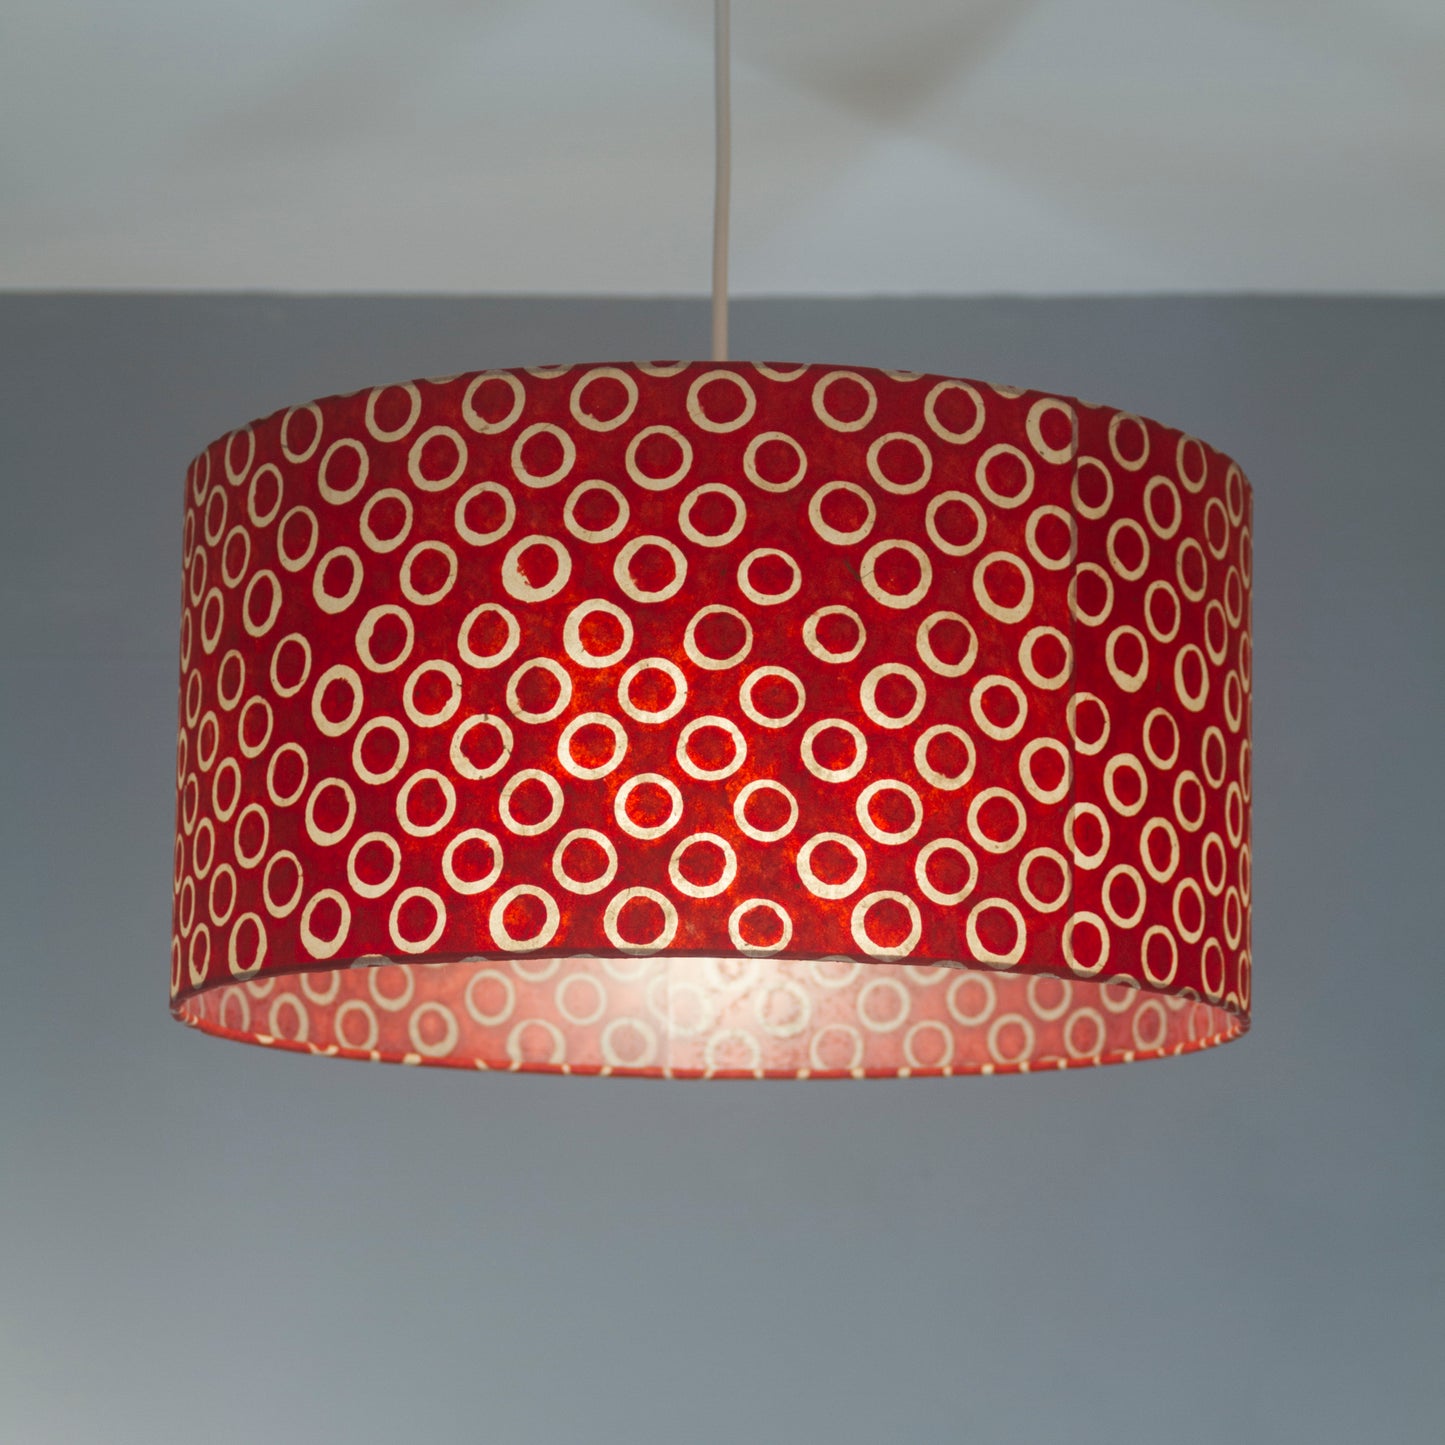 Drum Lamp Shade - P83 ~ Batik Red Circles, 40cm(d) x 40cm(h)